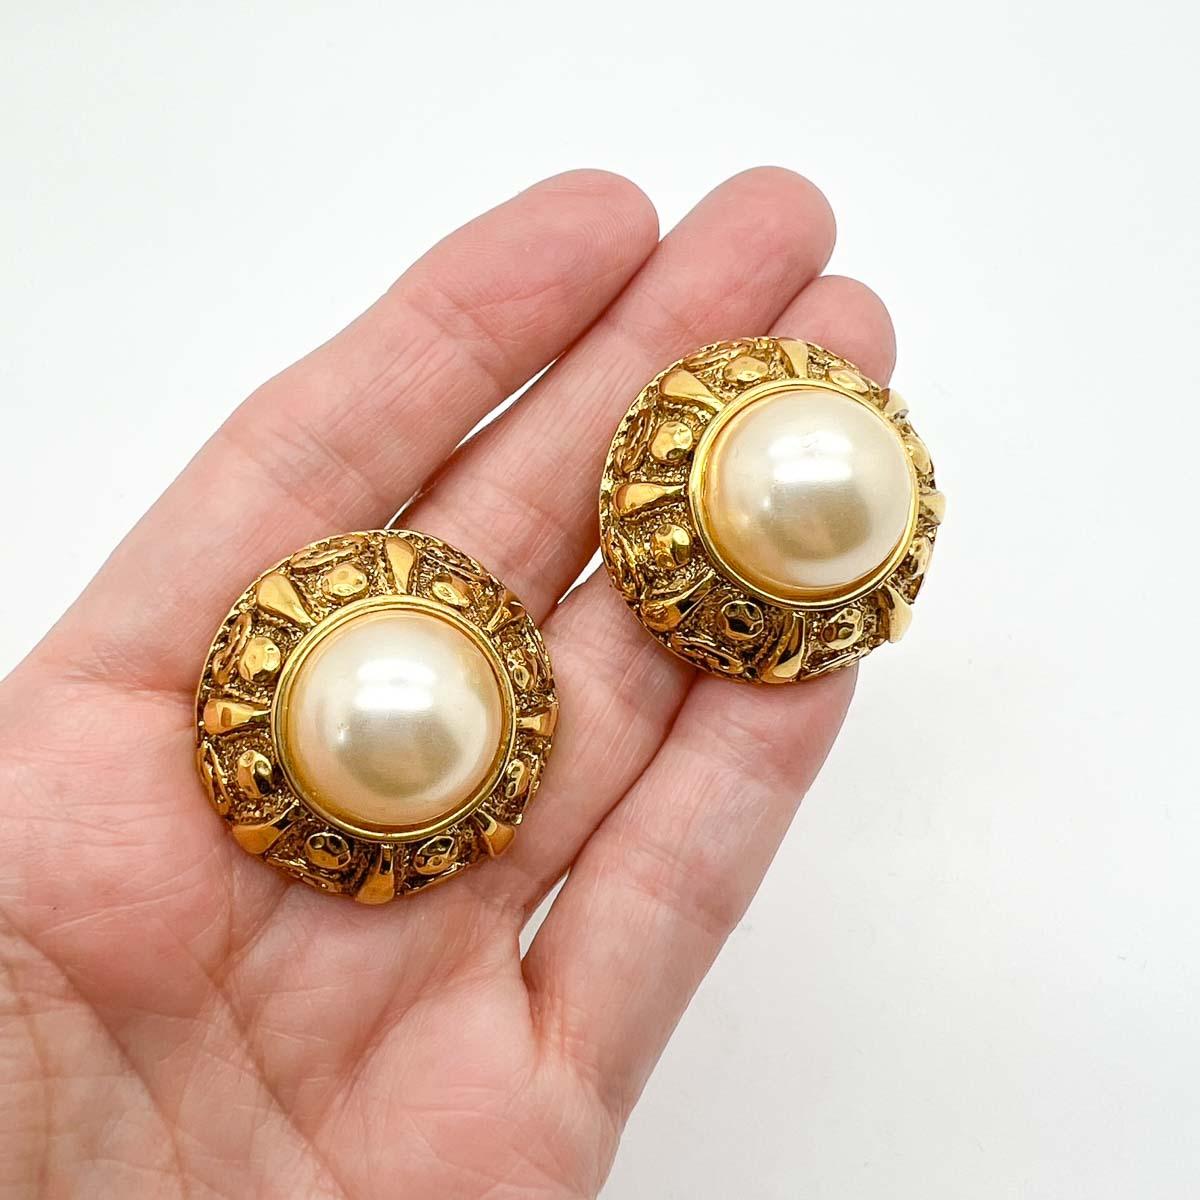 Ein wunderschönes Paar französischer Couture-Ohrringe mit etruskischen Perlen aus den 1980er Jahren. Eine atemberaubende geprägte Galerie umrahmt die großen, glänzenden Halbperlen. Ganz und gar 80er Jahre und immer schick. Aufgrund der Konstruktion,